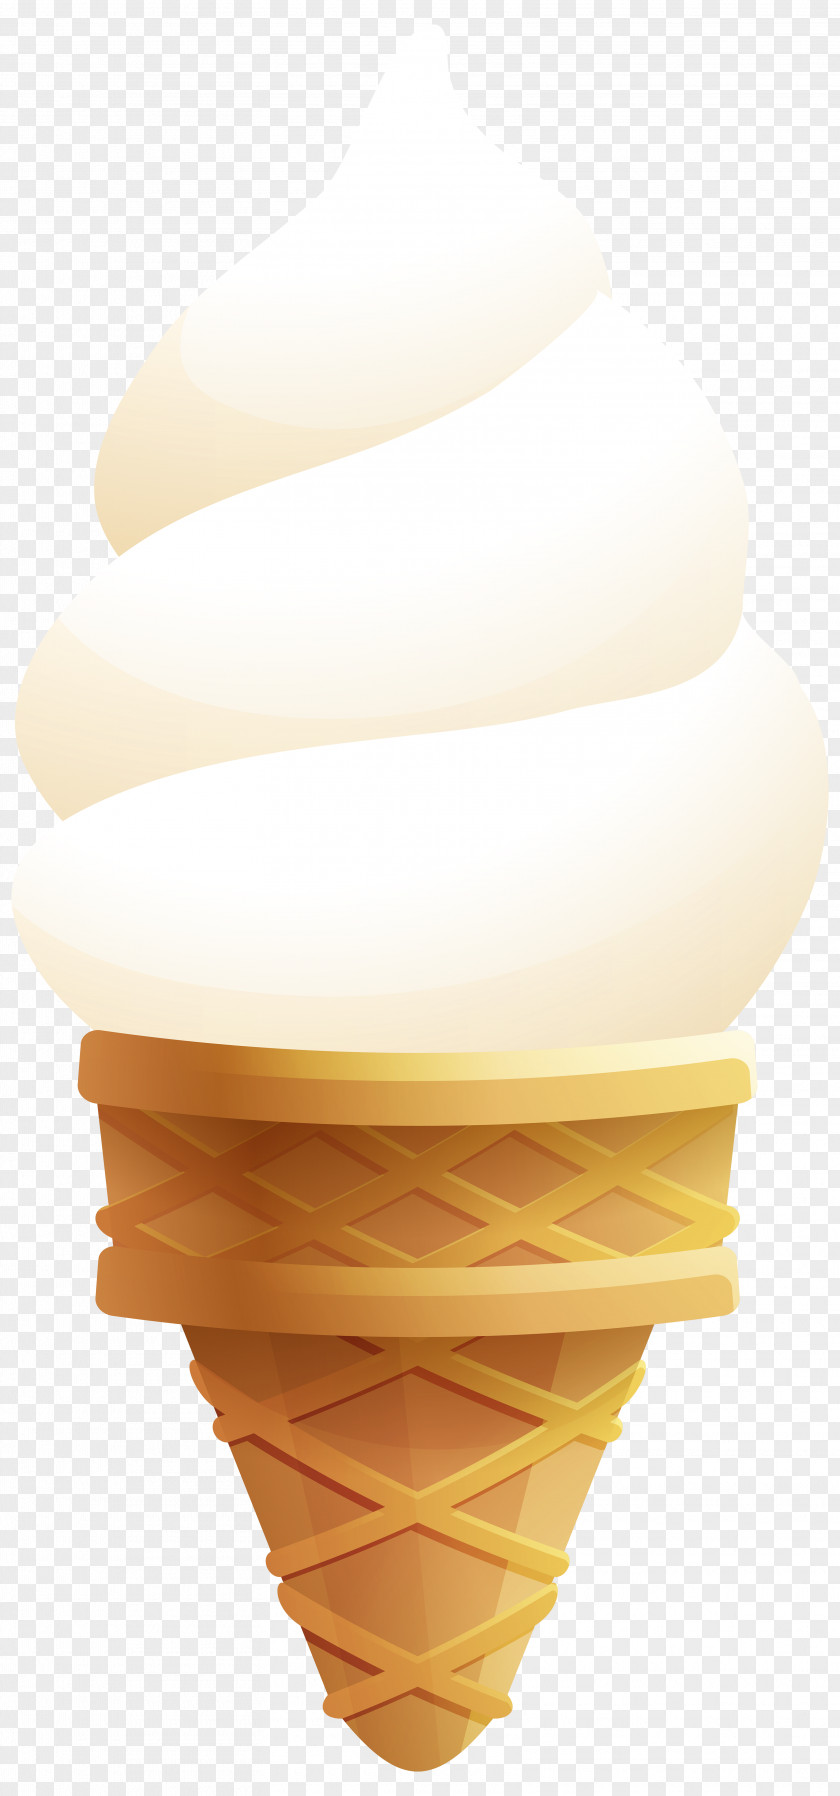 Ice Cream Transparent Clip Art Image Cone Food PNG